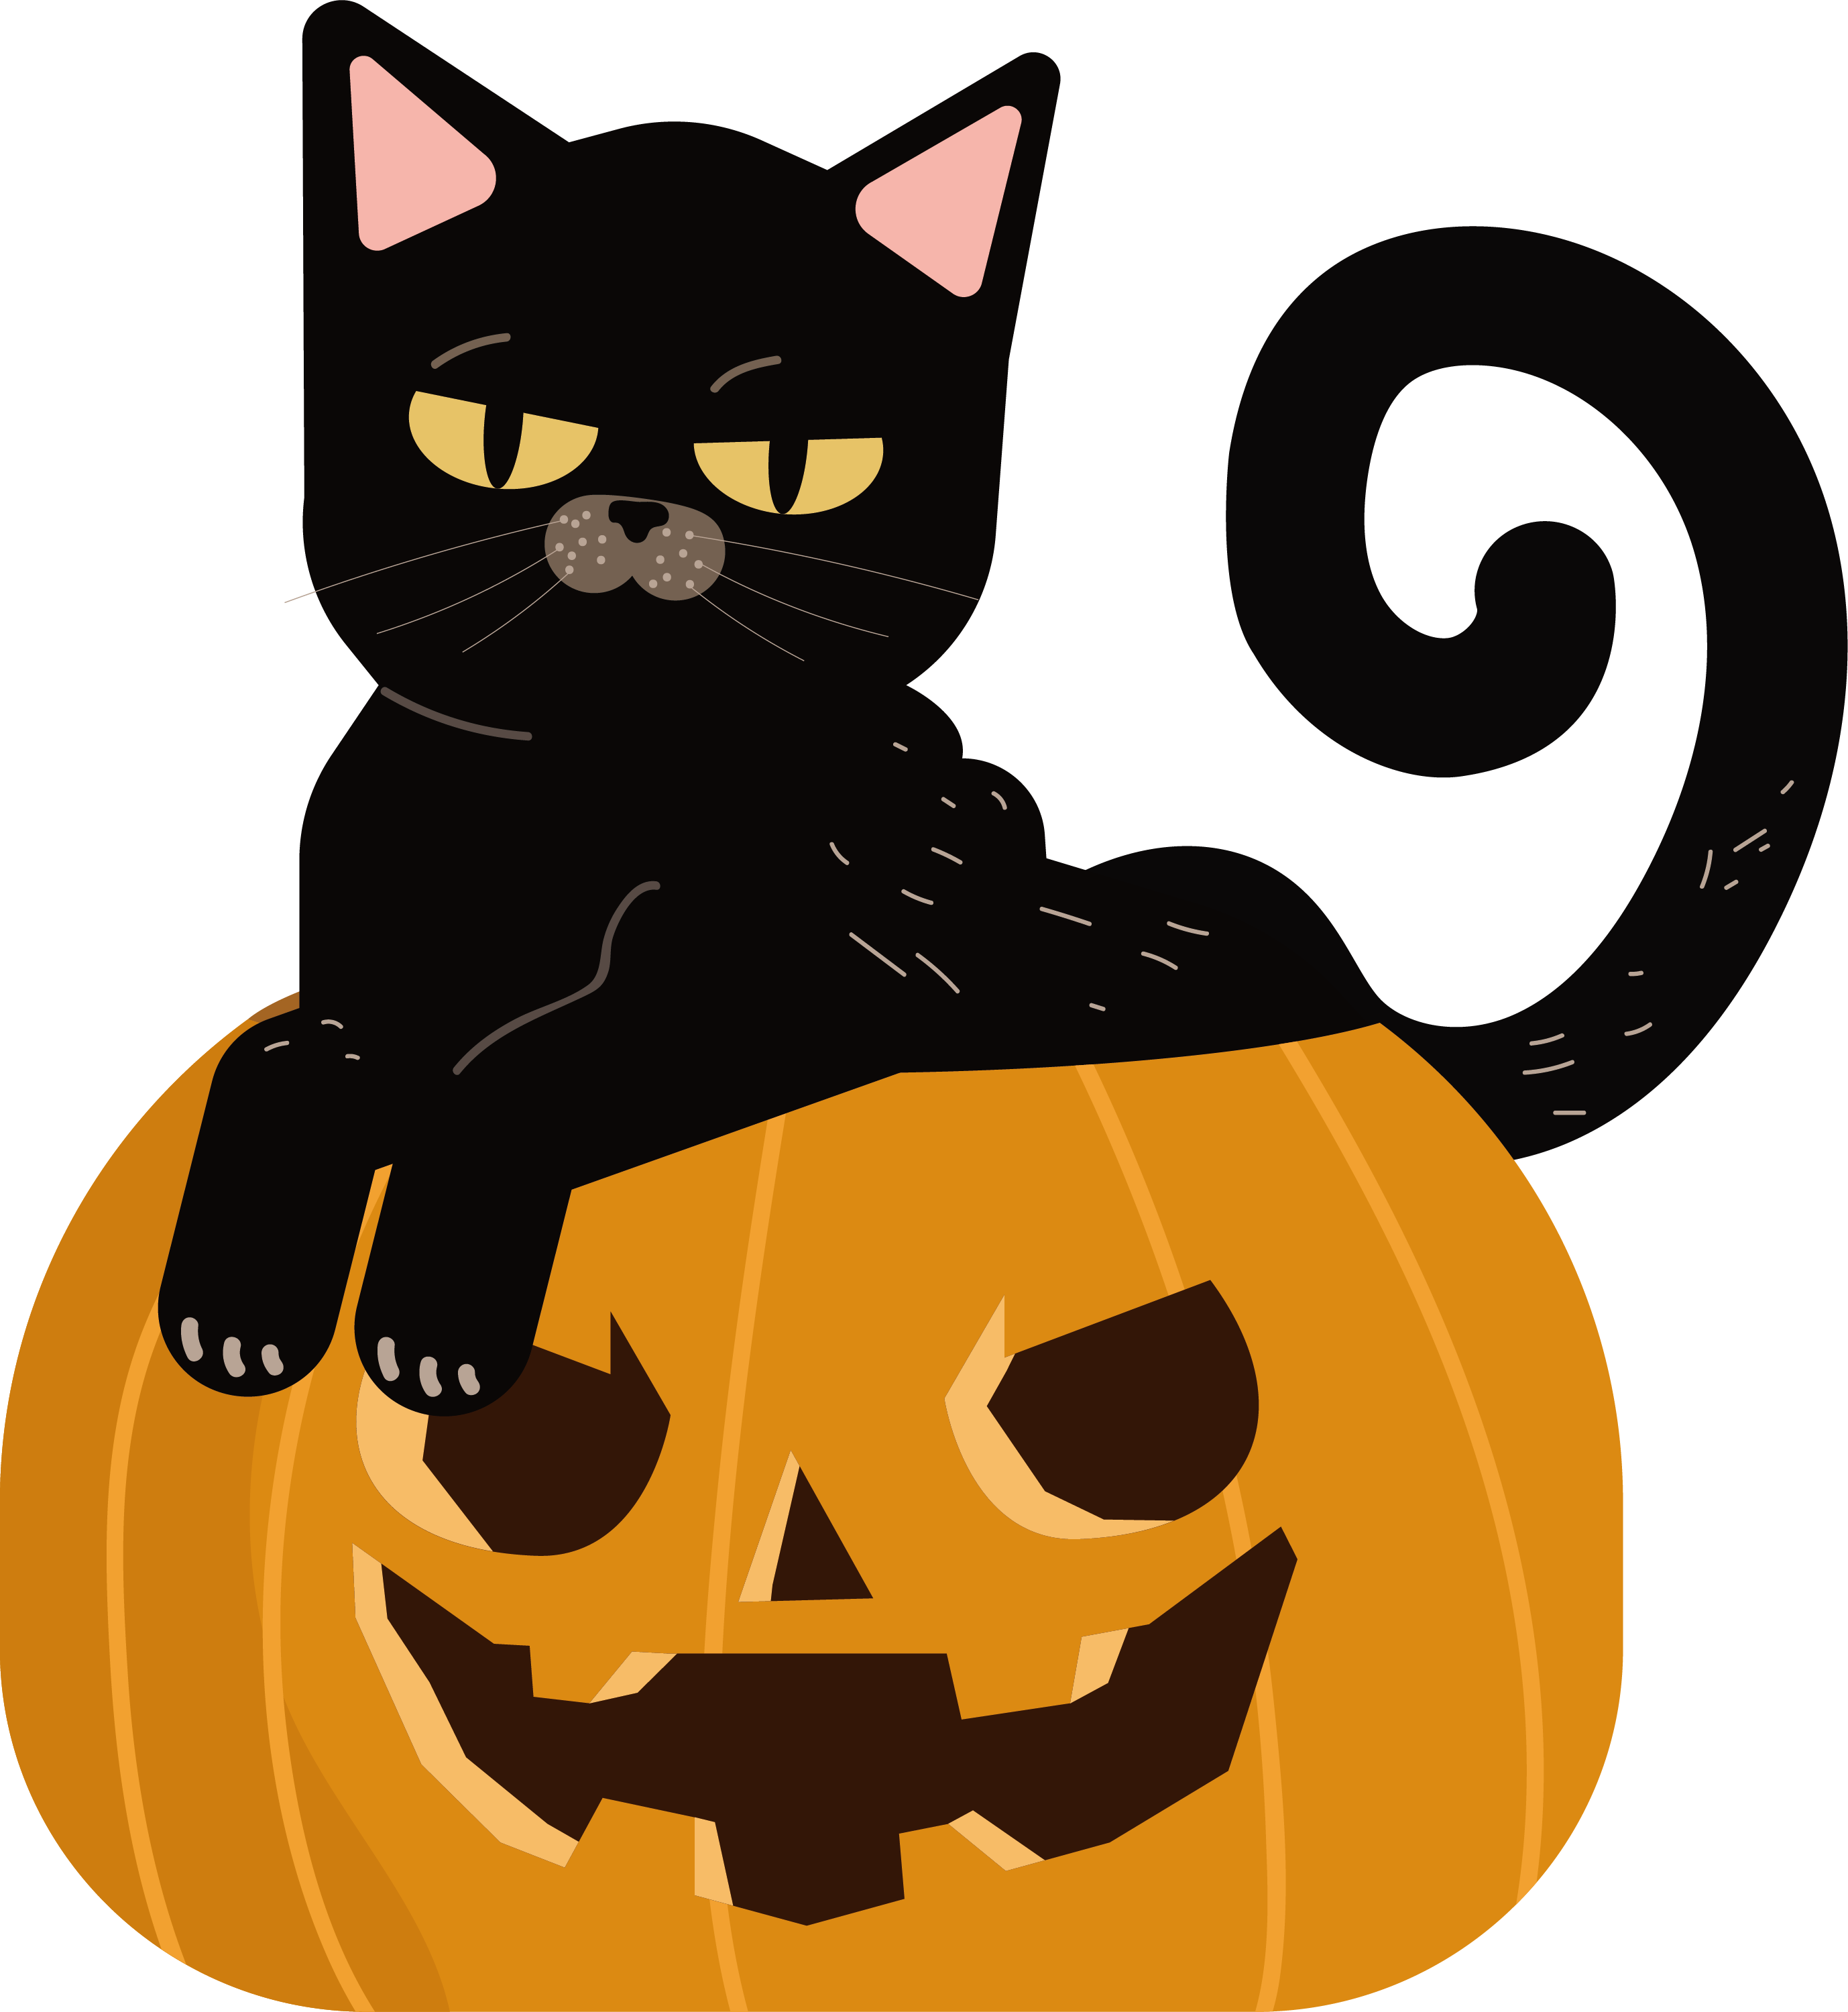 A Black Cat Sitting On A Pumpkin